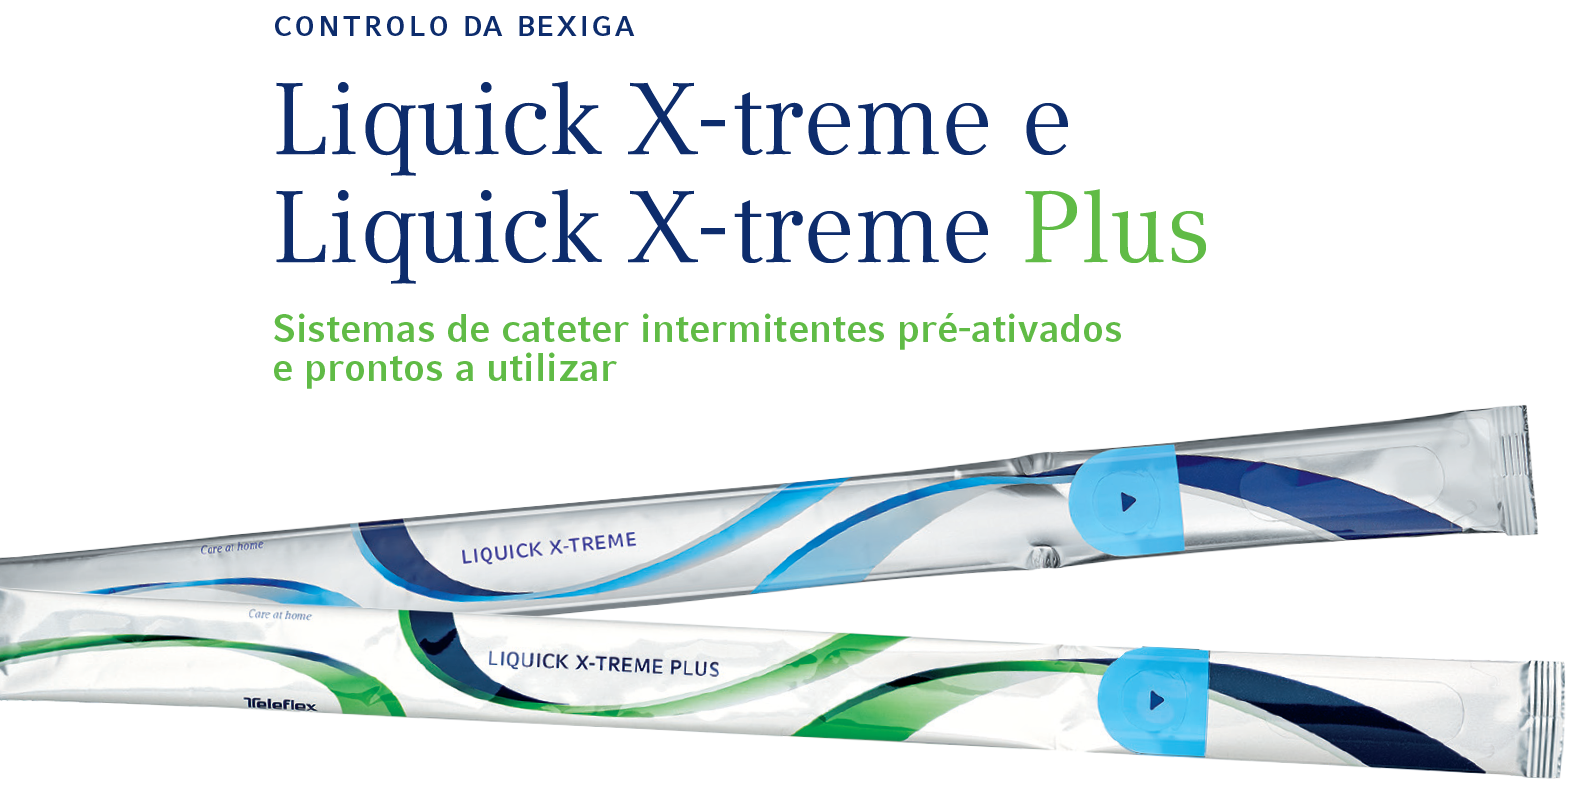 Vídeos do produto Liquick X-treme e do Liquick X-treme Plus